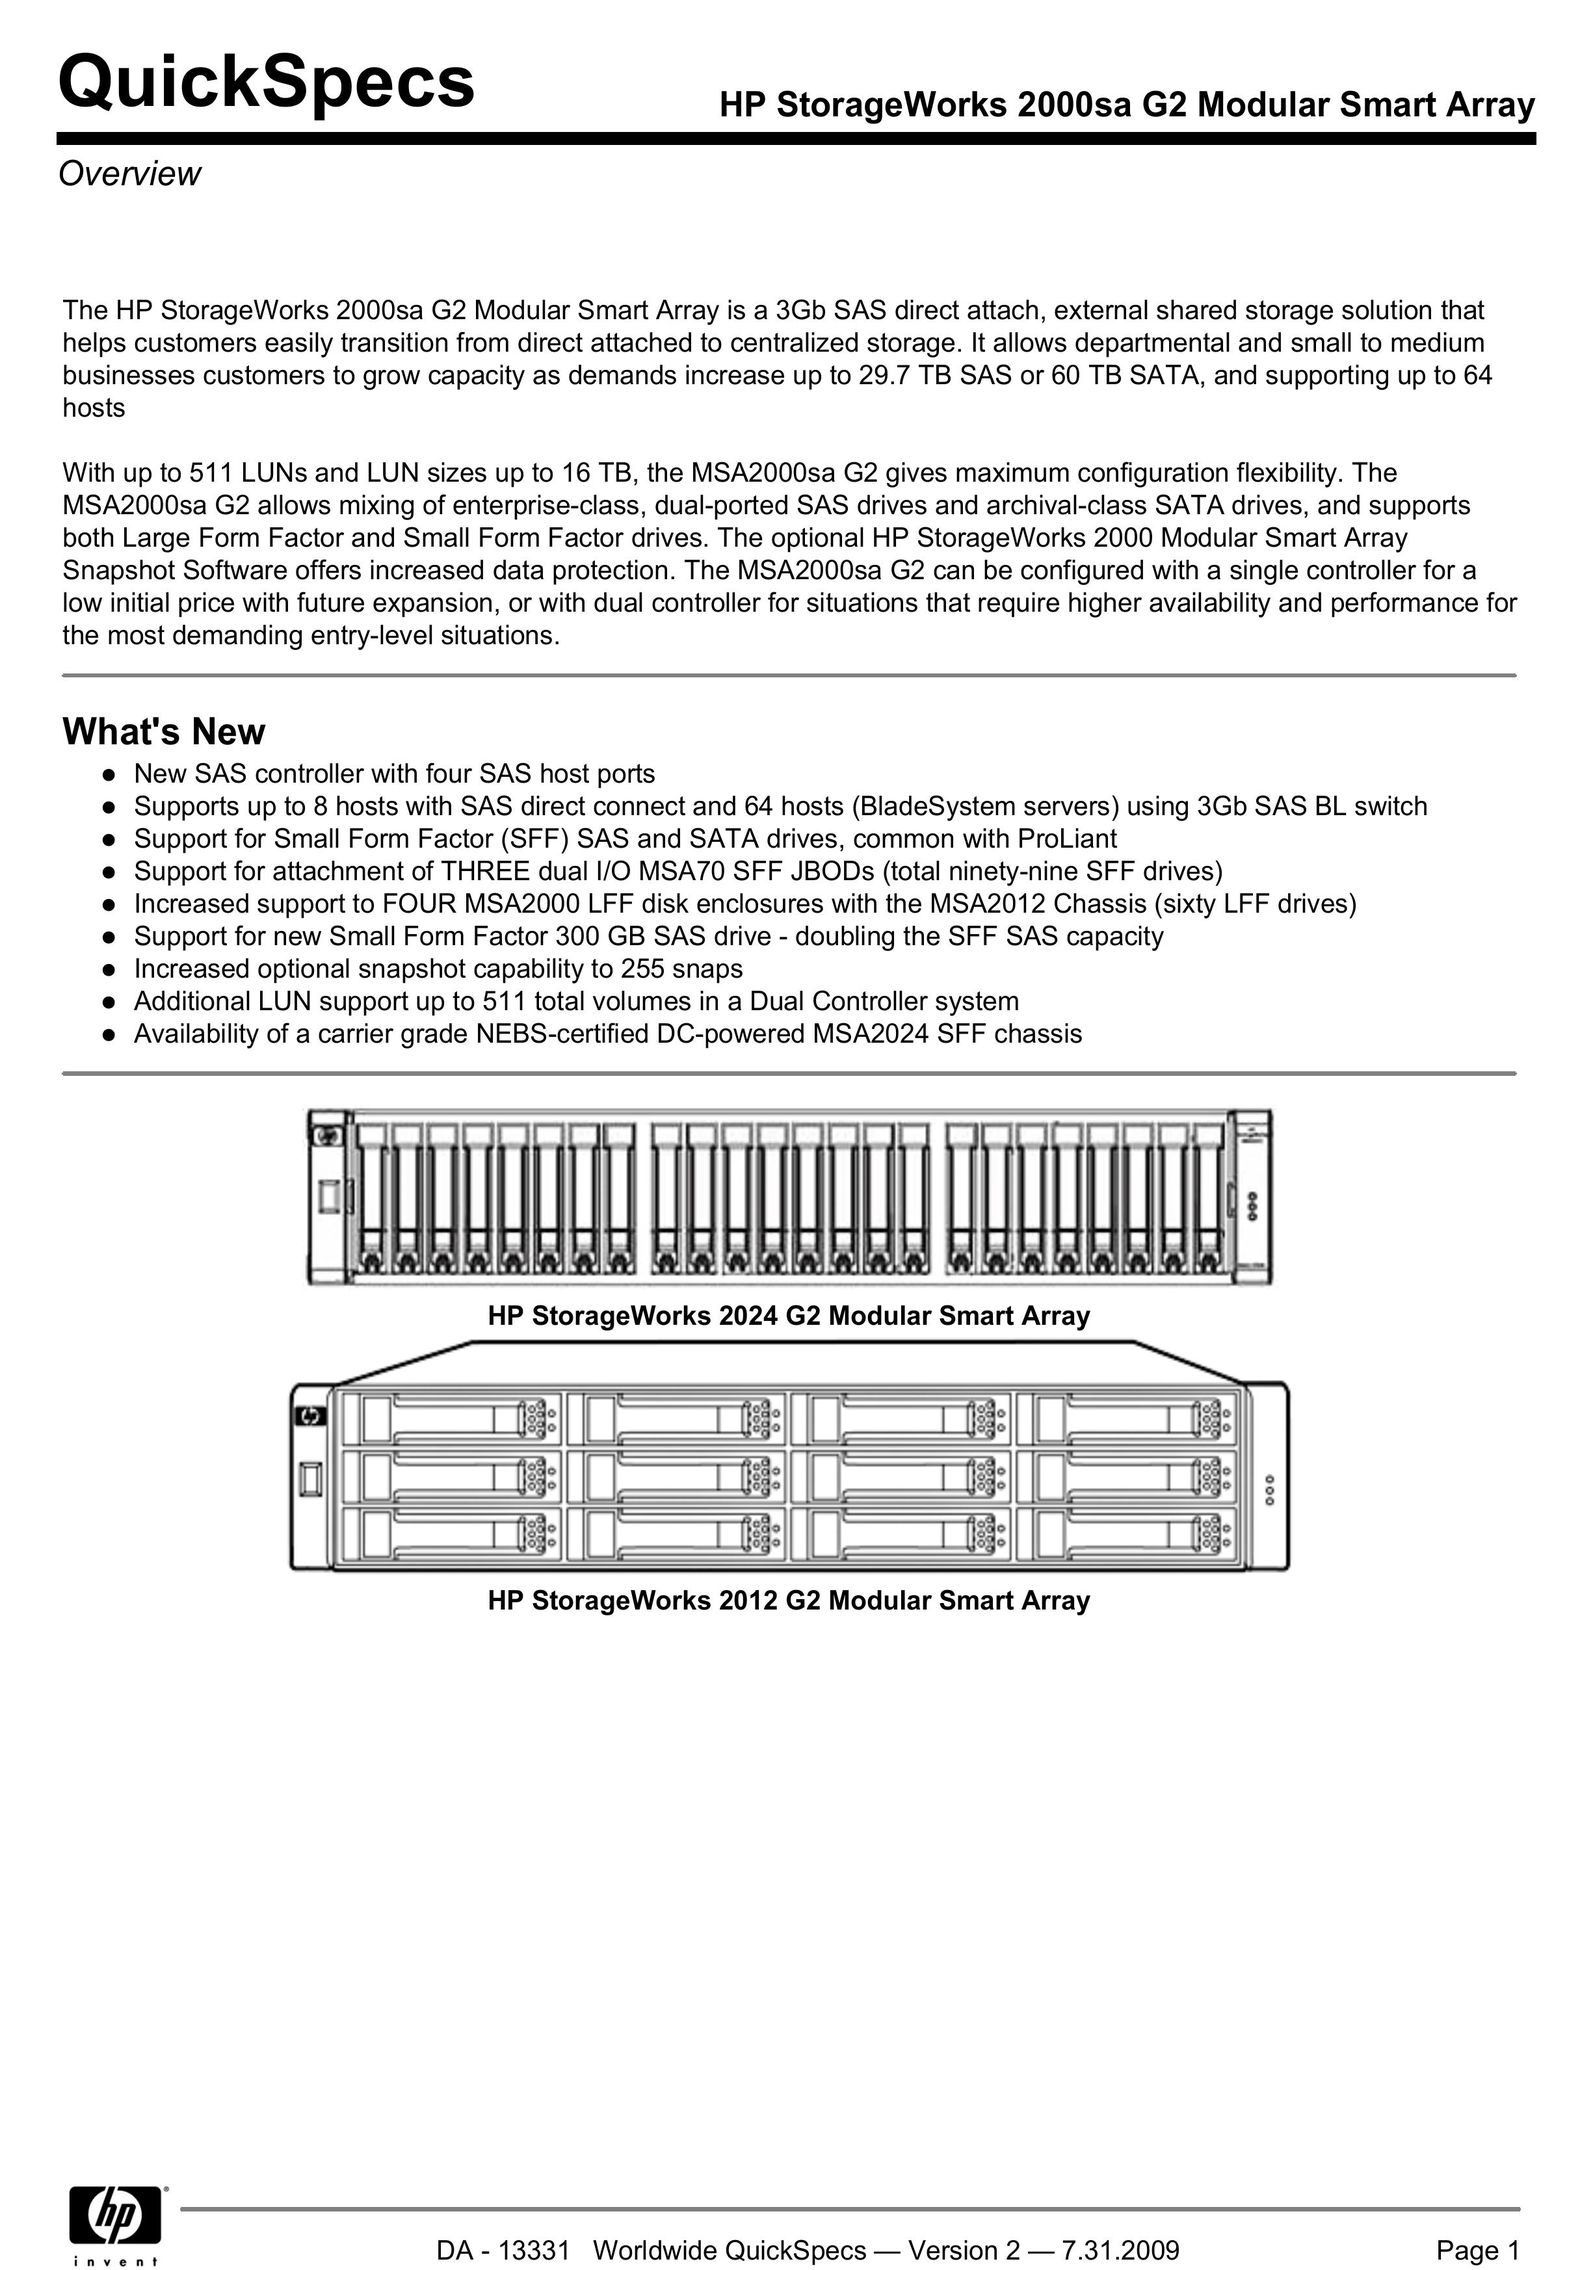 HP (Hewlett-Packard) 2000 SA G2 Server User Manual